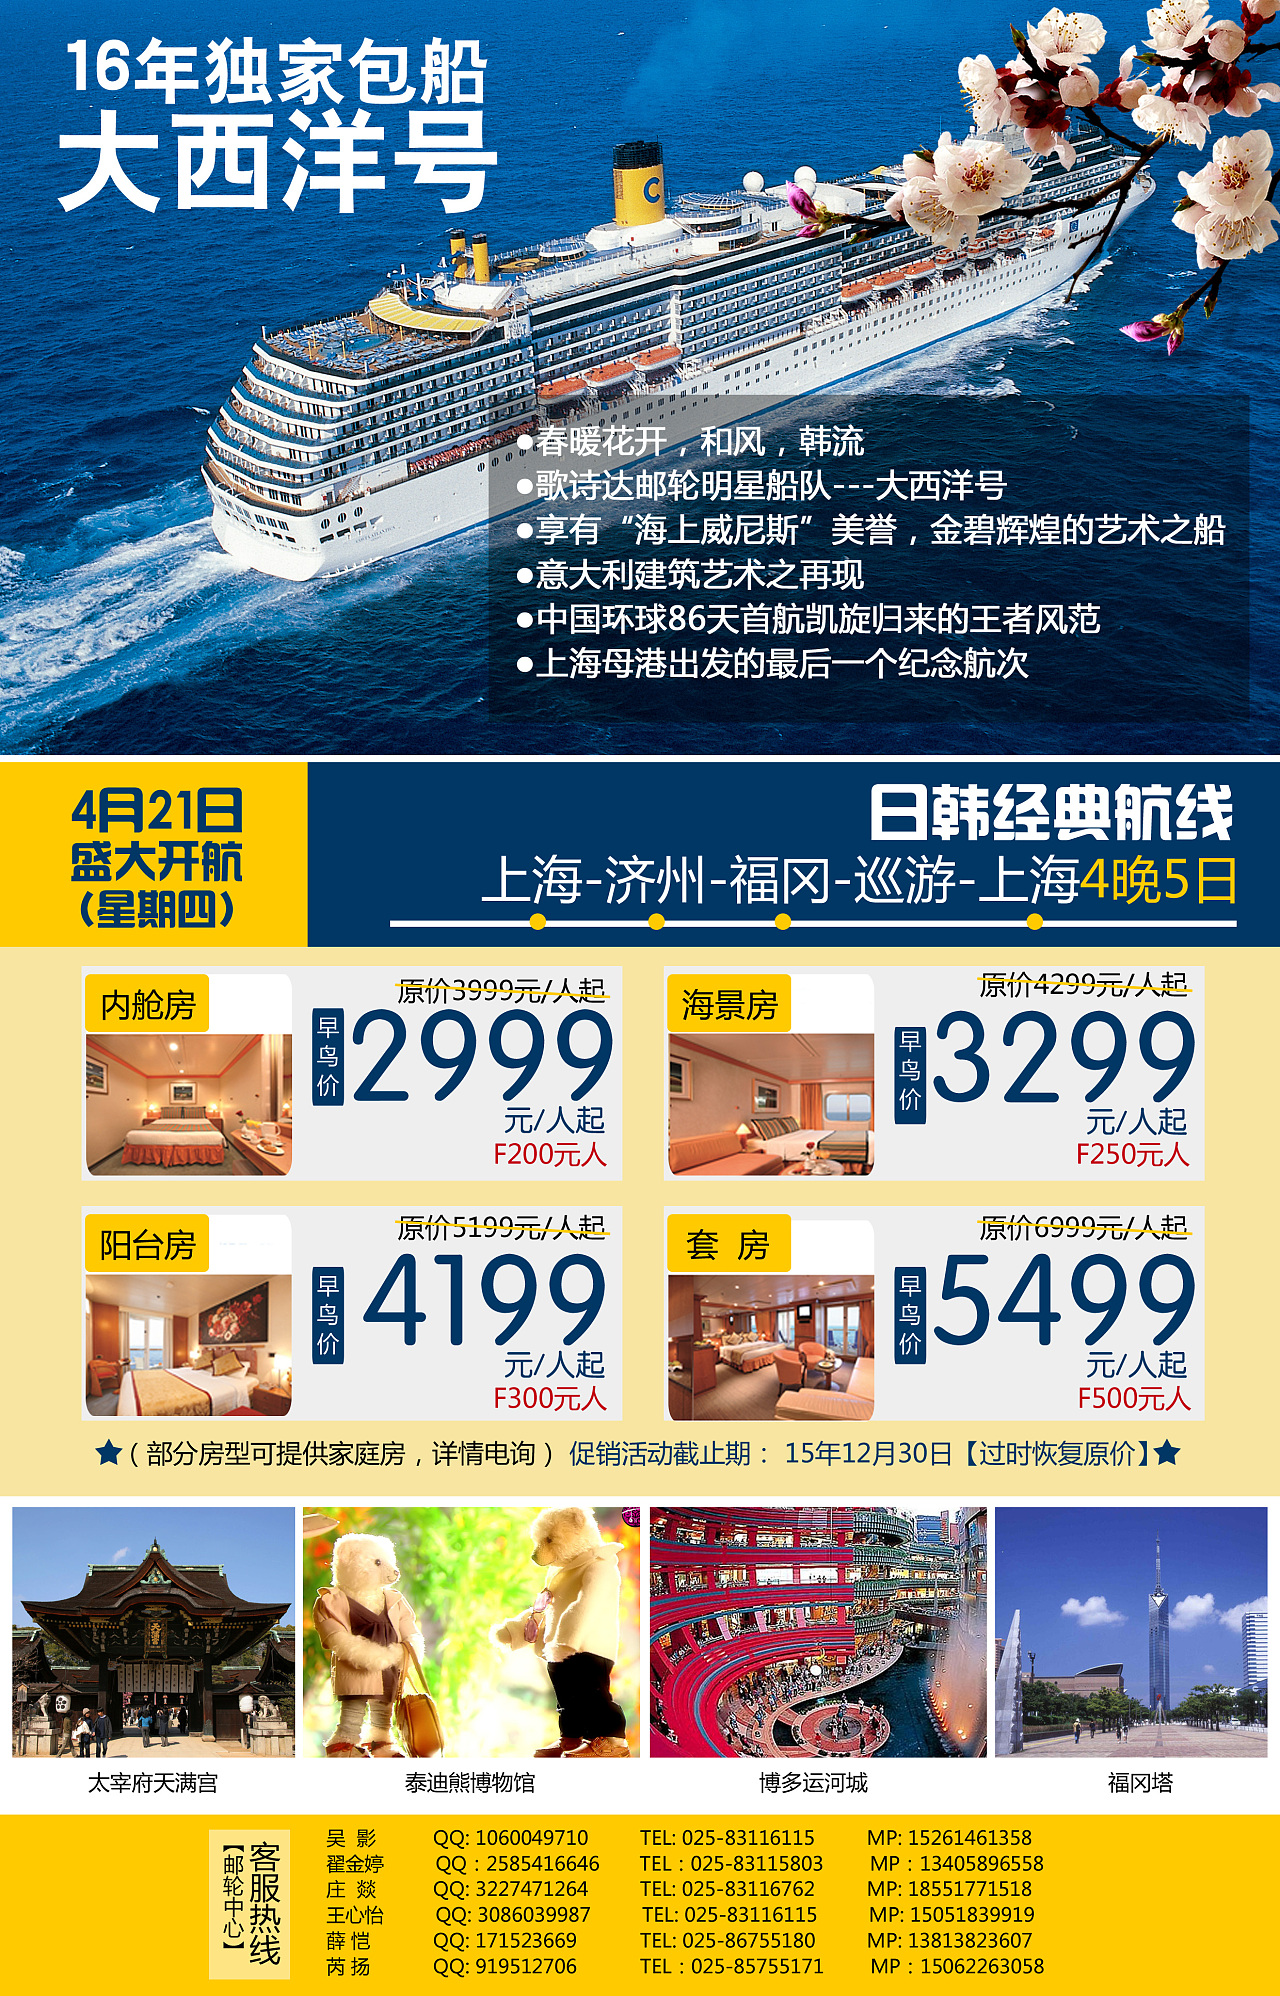 歌诗达邮轮开启夏季航线 | TTG China